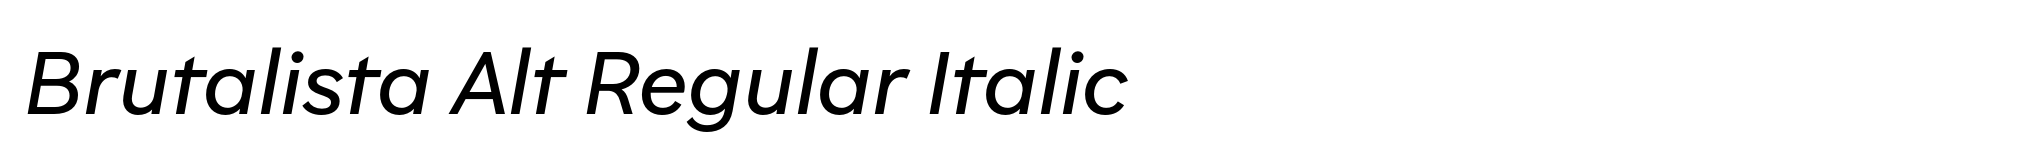 Brutalista Alt Regular Italic image